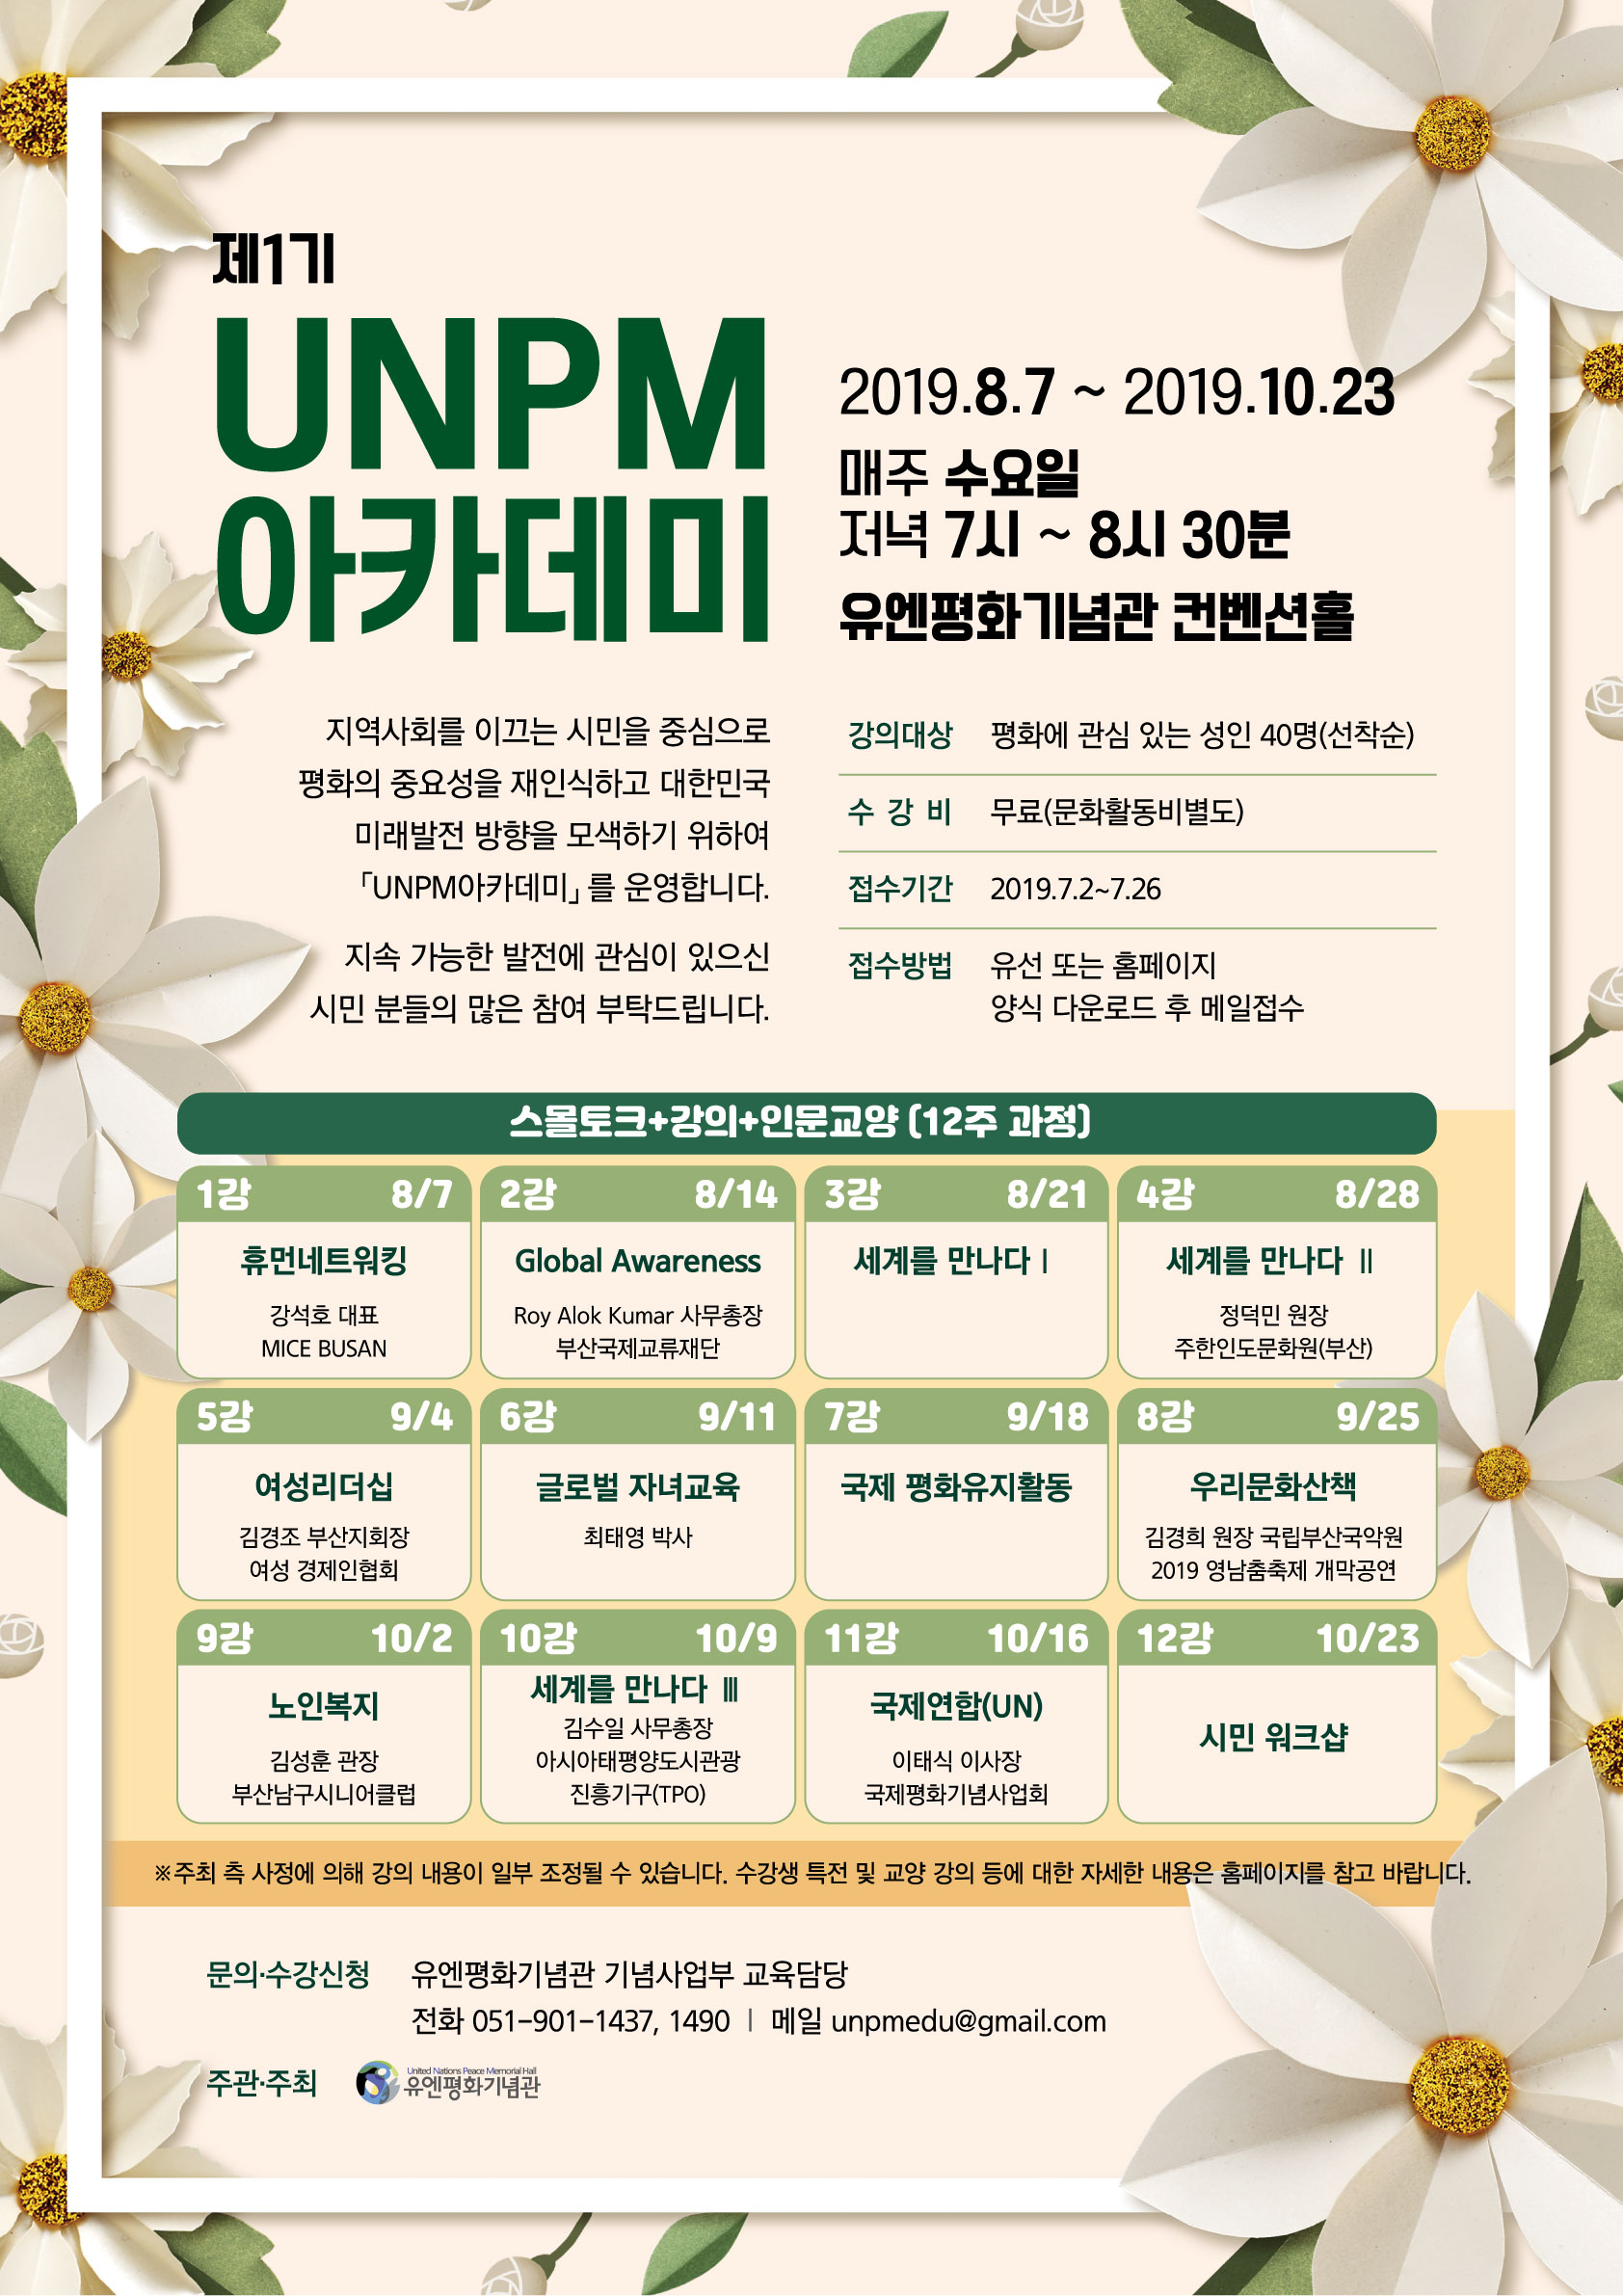 「제1기 UNPM 아카데미」 모집 포스터.jpg